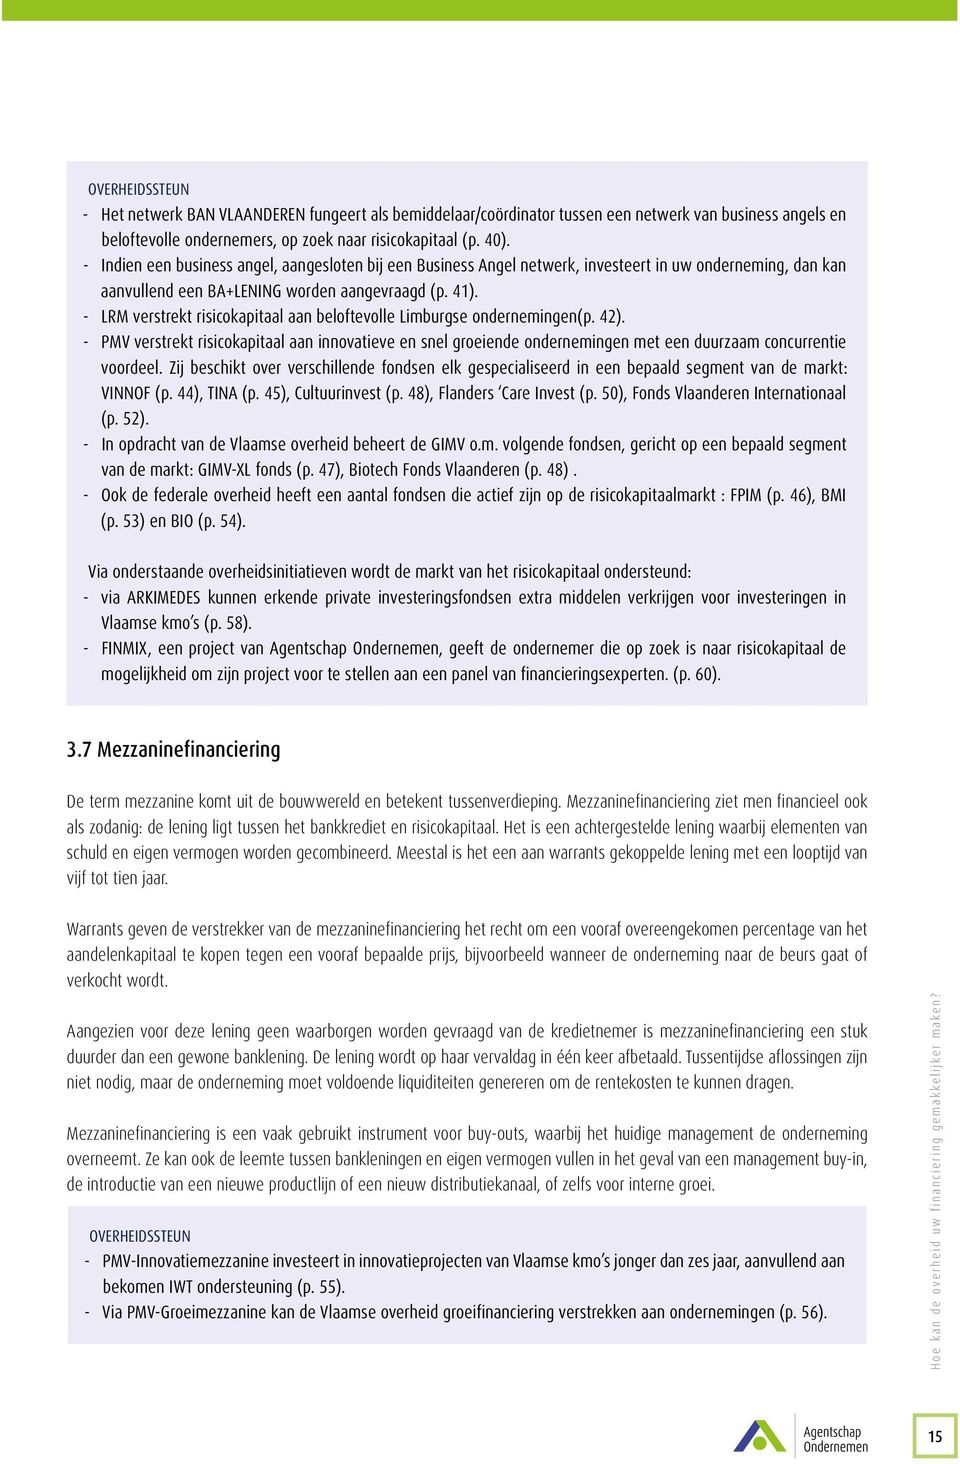 -- LRM verstrekt risicokapitaal aan beloftevolle Limburgse ondernemingen(p. 42). -- PMV verstrekt risicokapitaal aan innovatieve en snel groeiende ondernemingen met een duurzaam concurrentie voordeel.